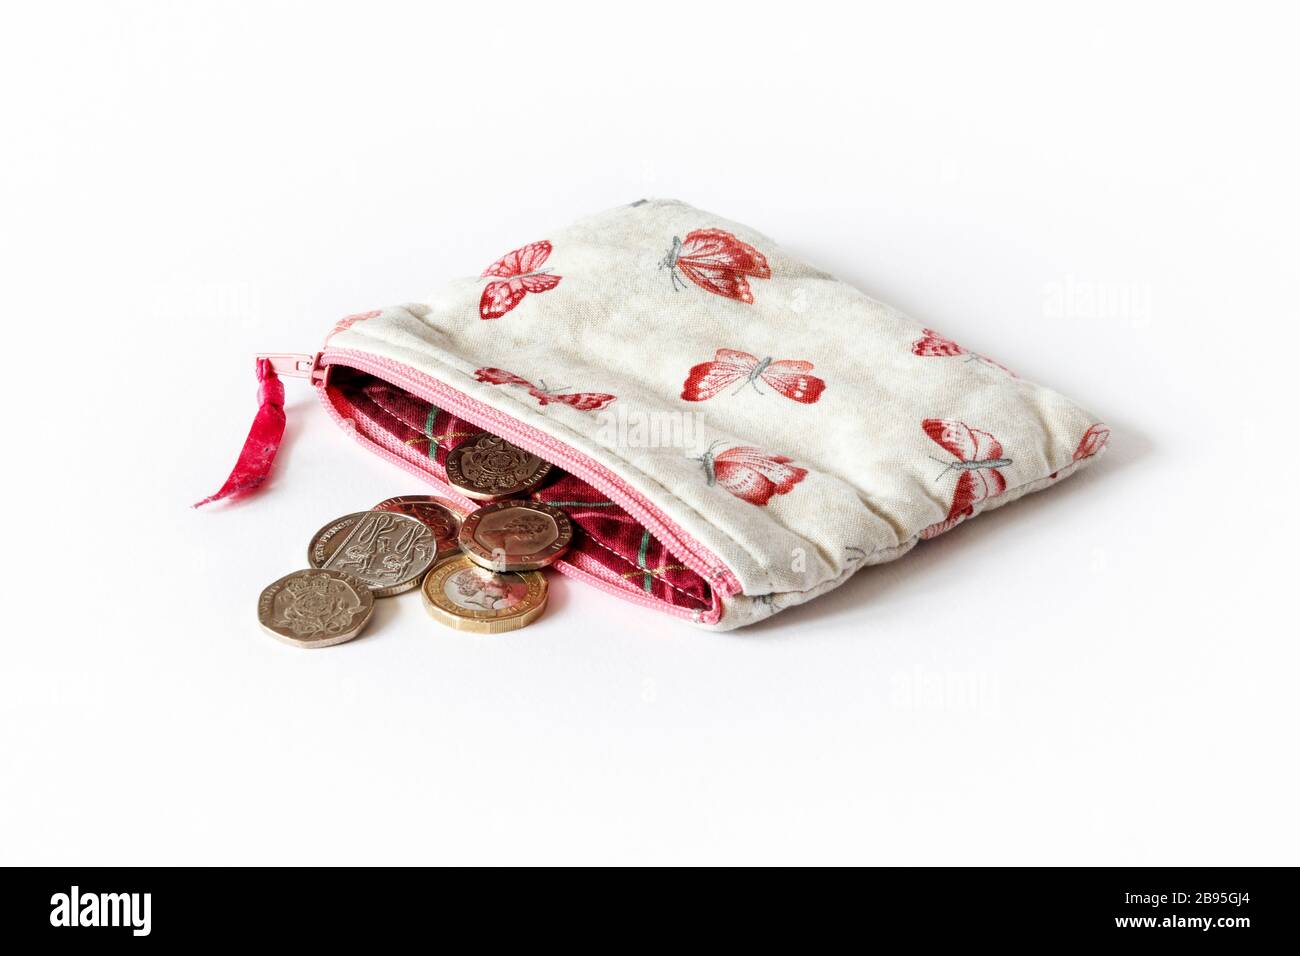 Un sac à main en tissu rose à motif papillons et fermeture à glissière ouvert avec pièces britanniques Banque D'Images